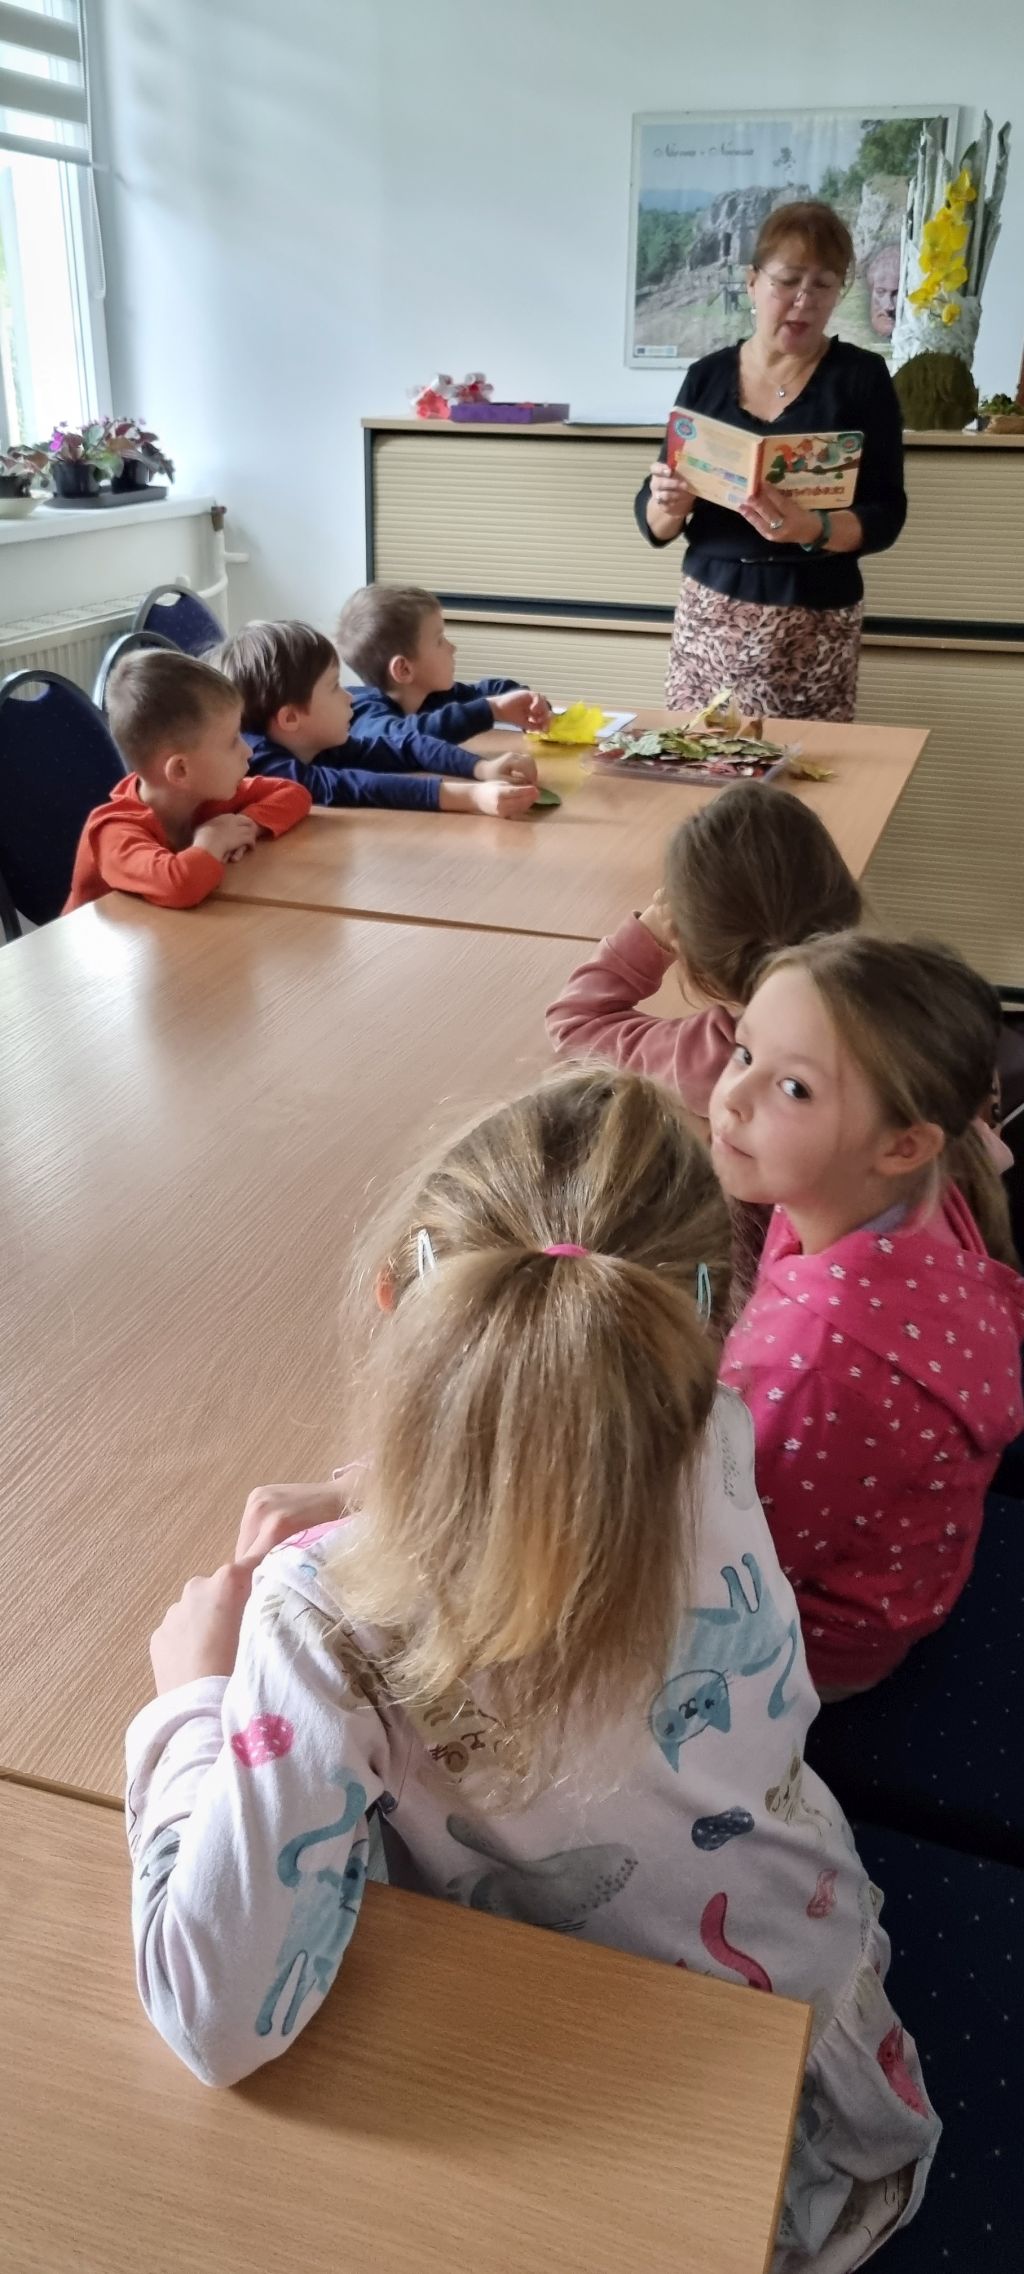 Przedszkolaki słuchają opowiadania pi. "Awanturki wiewiórki".